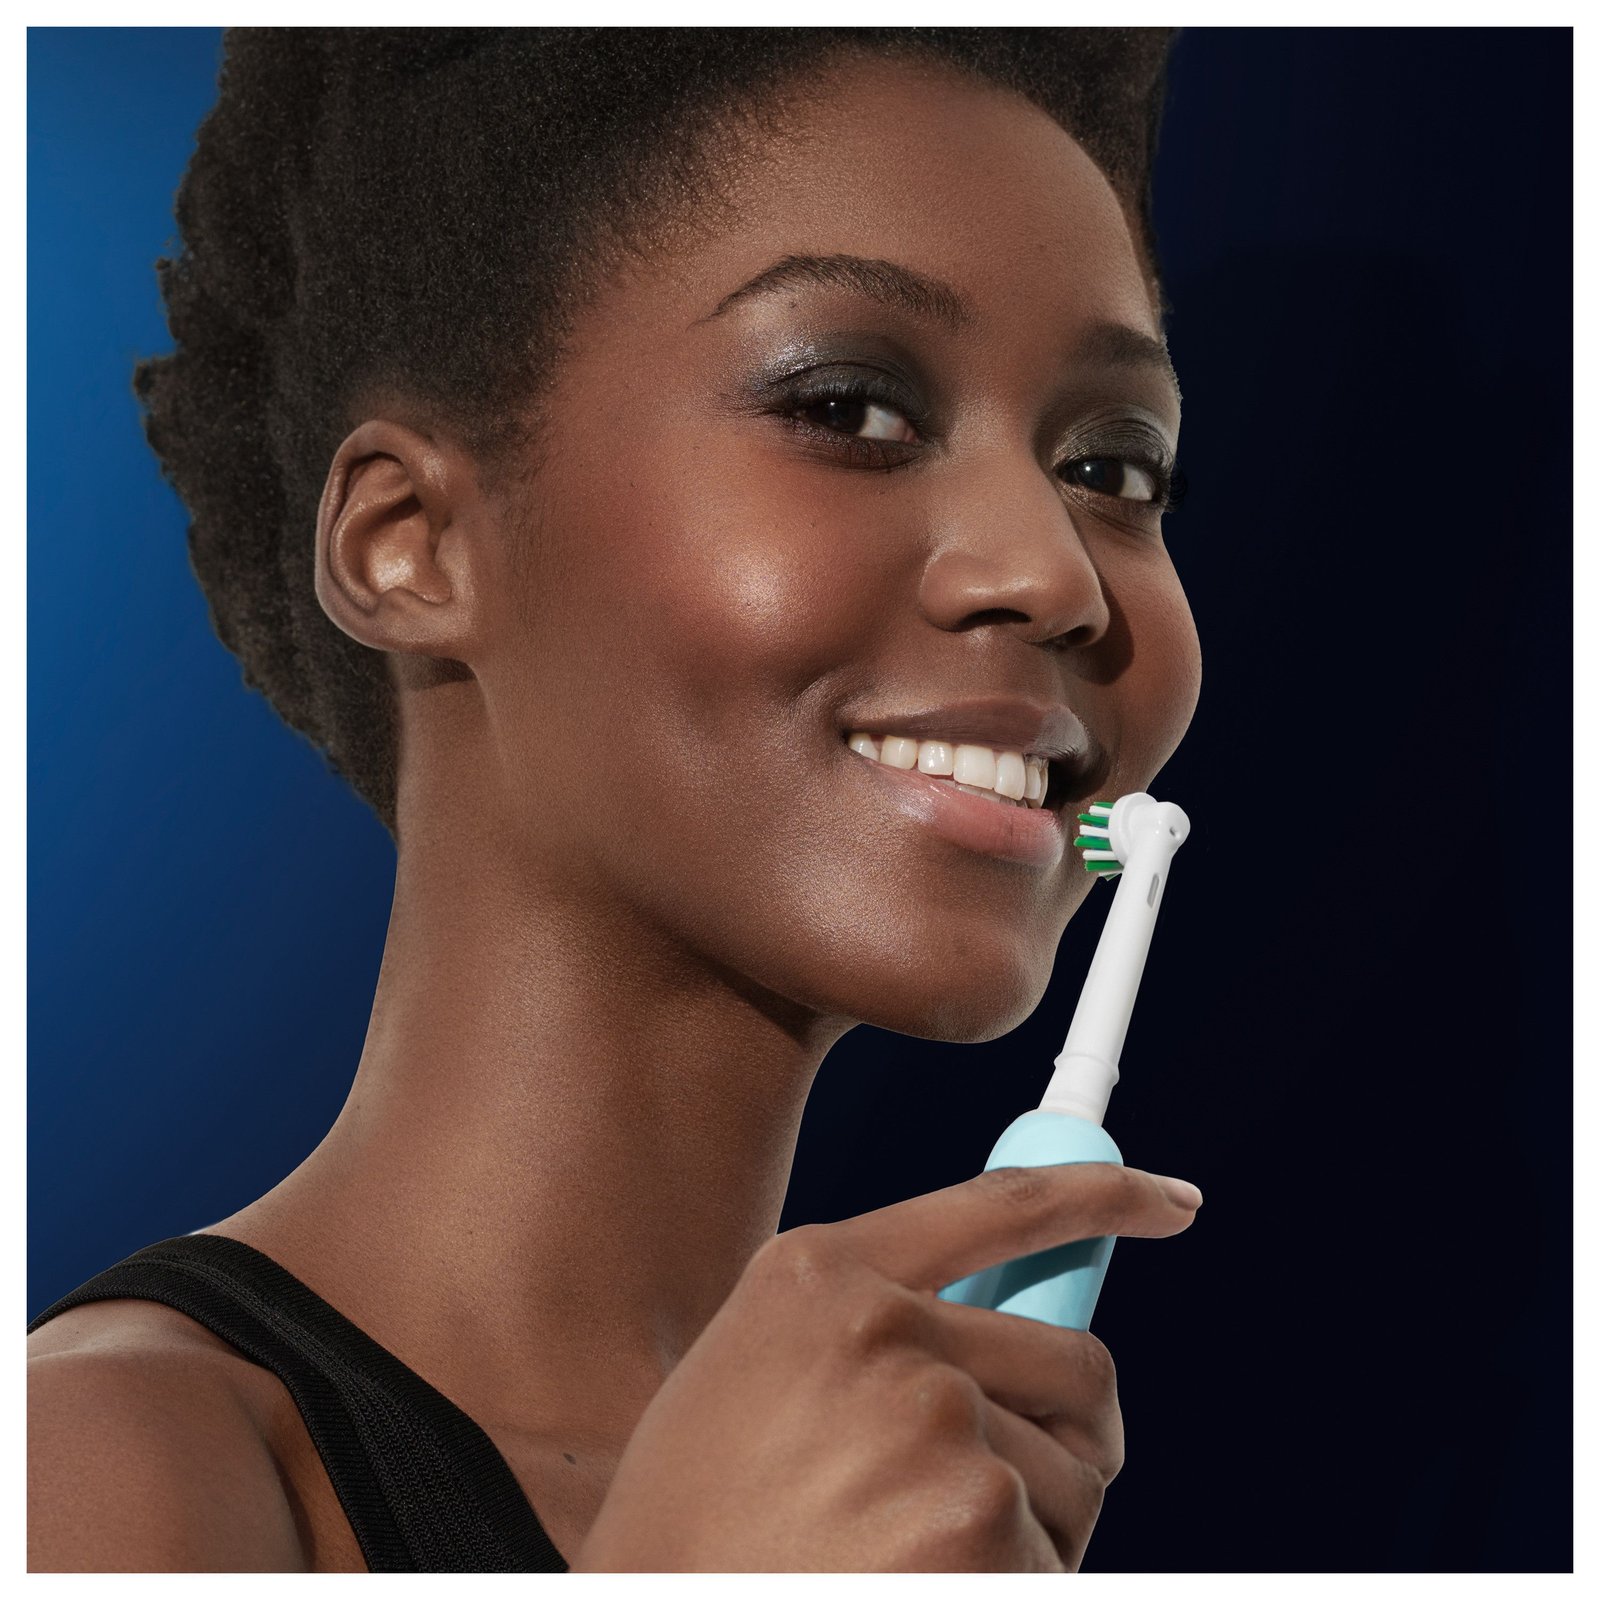 Oral-B Pro 1 Duopack, blå och svart eltandborste, 2 tandborsthuvuden